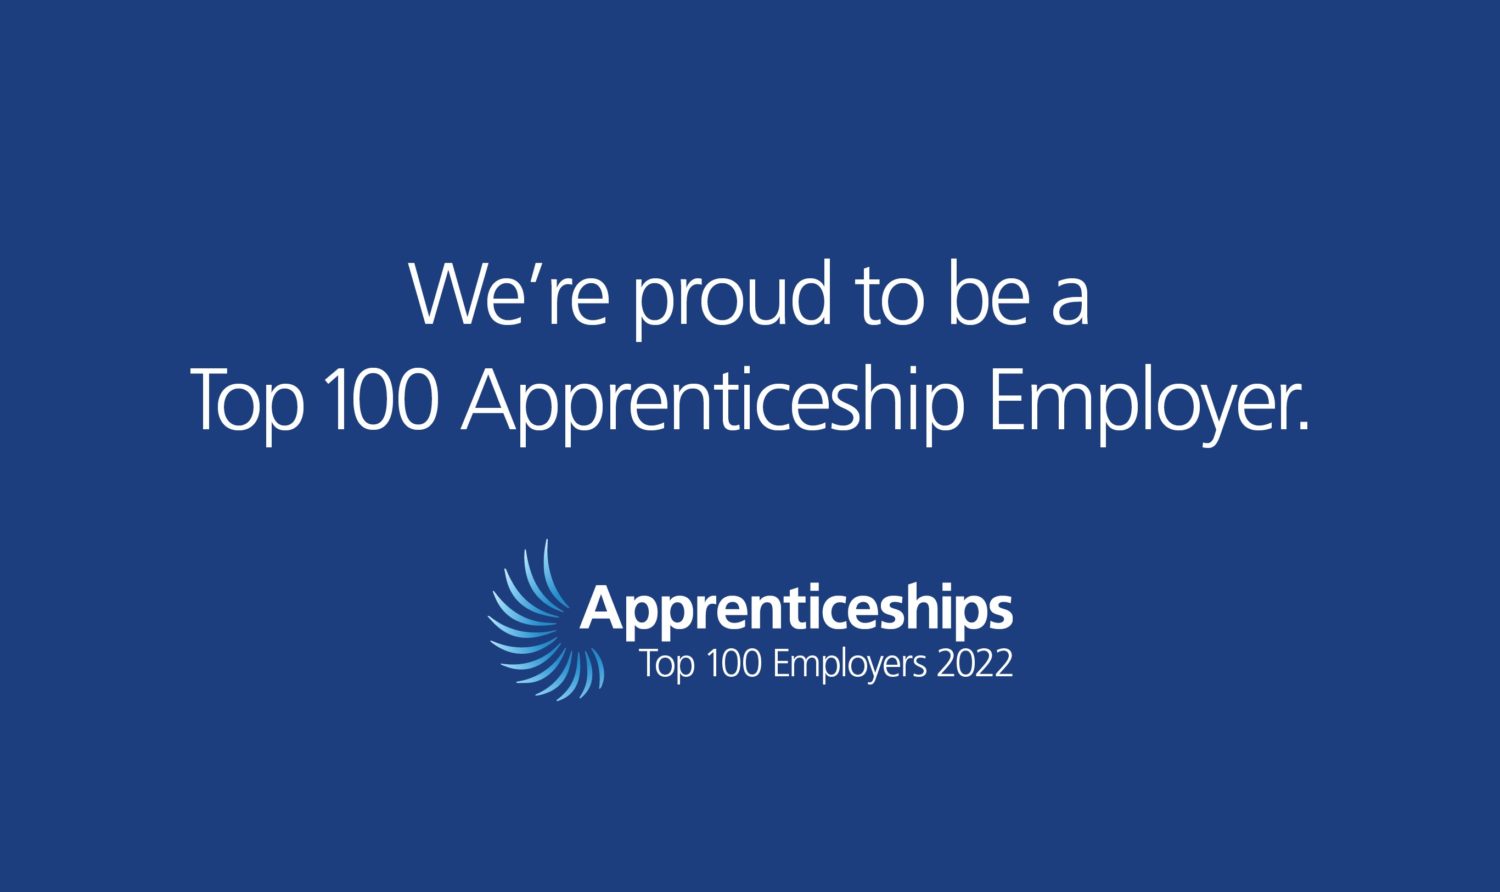 Top Apprenticeship Employer 2022